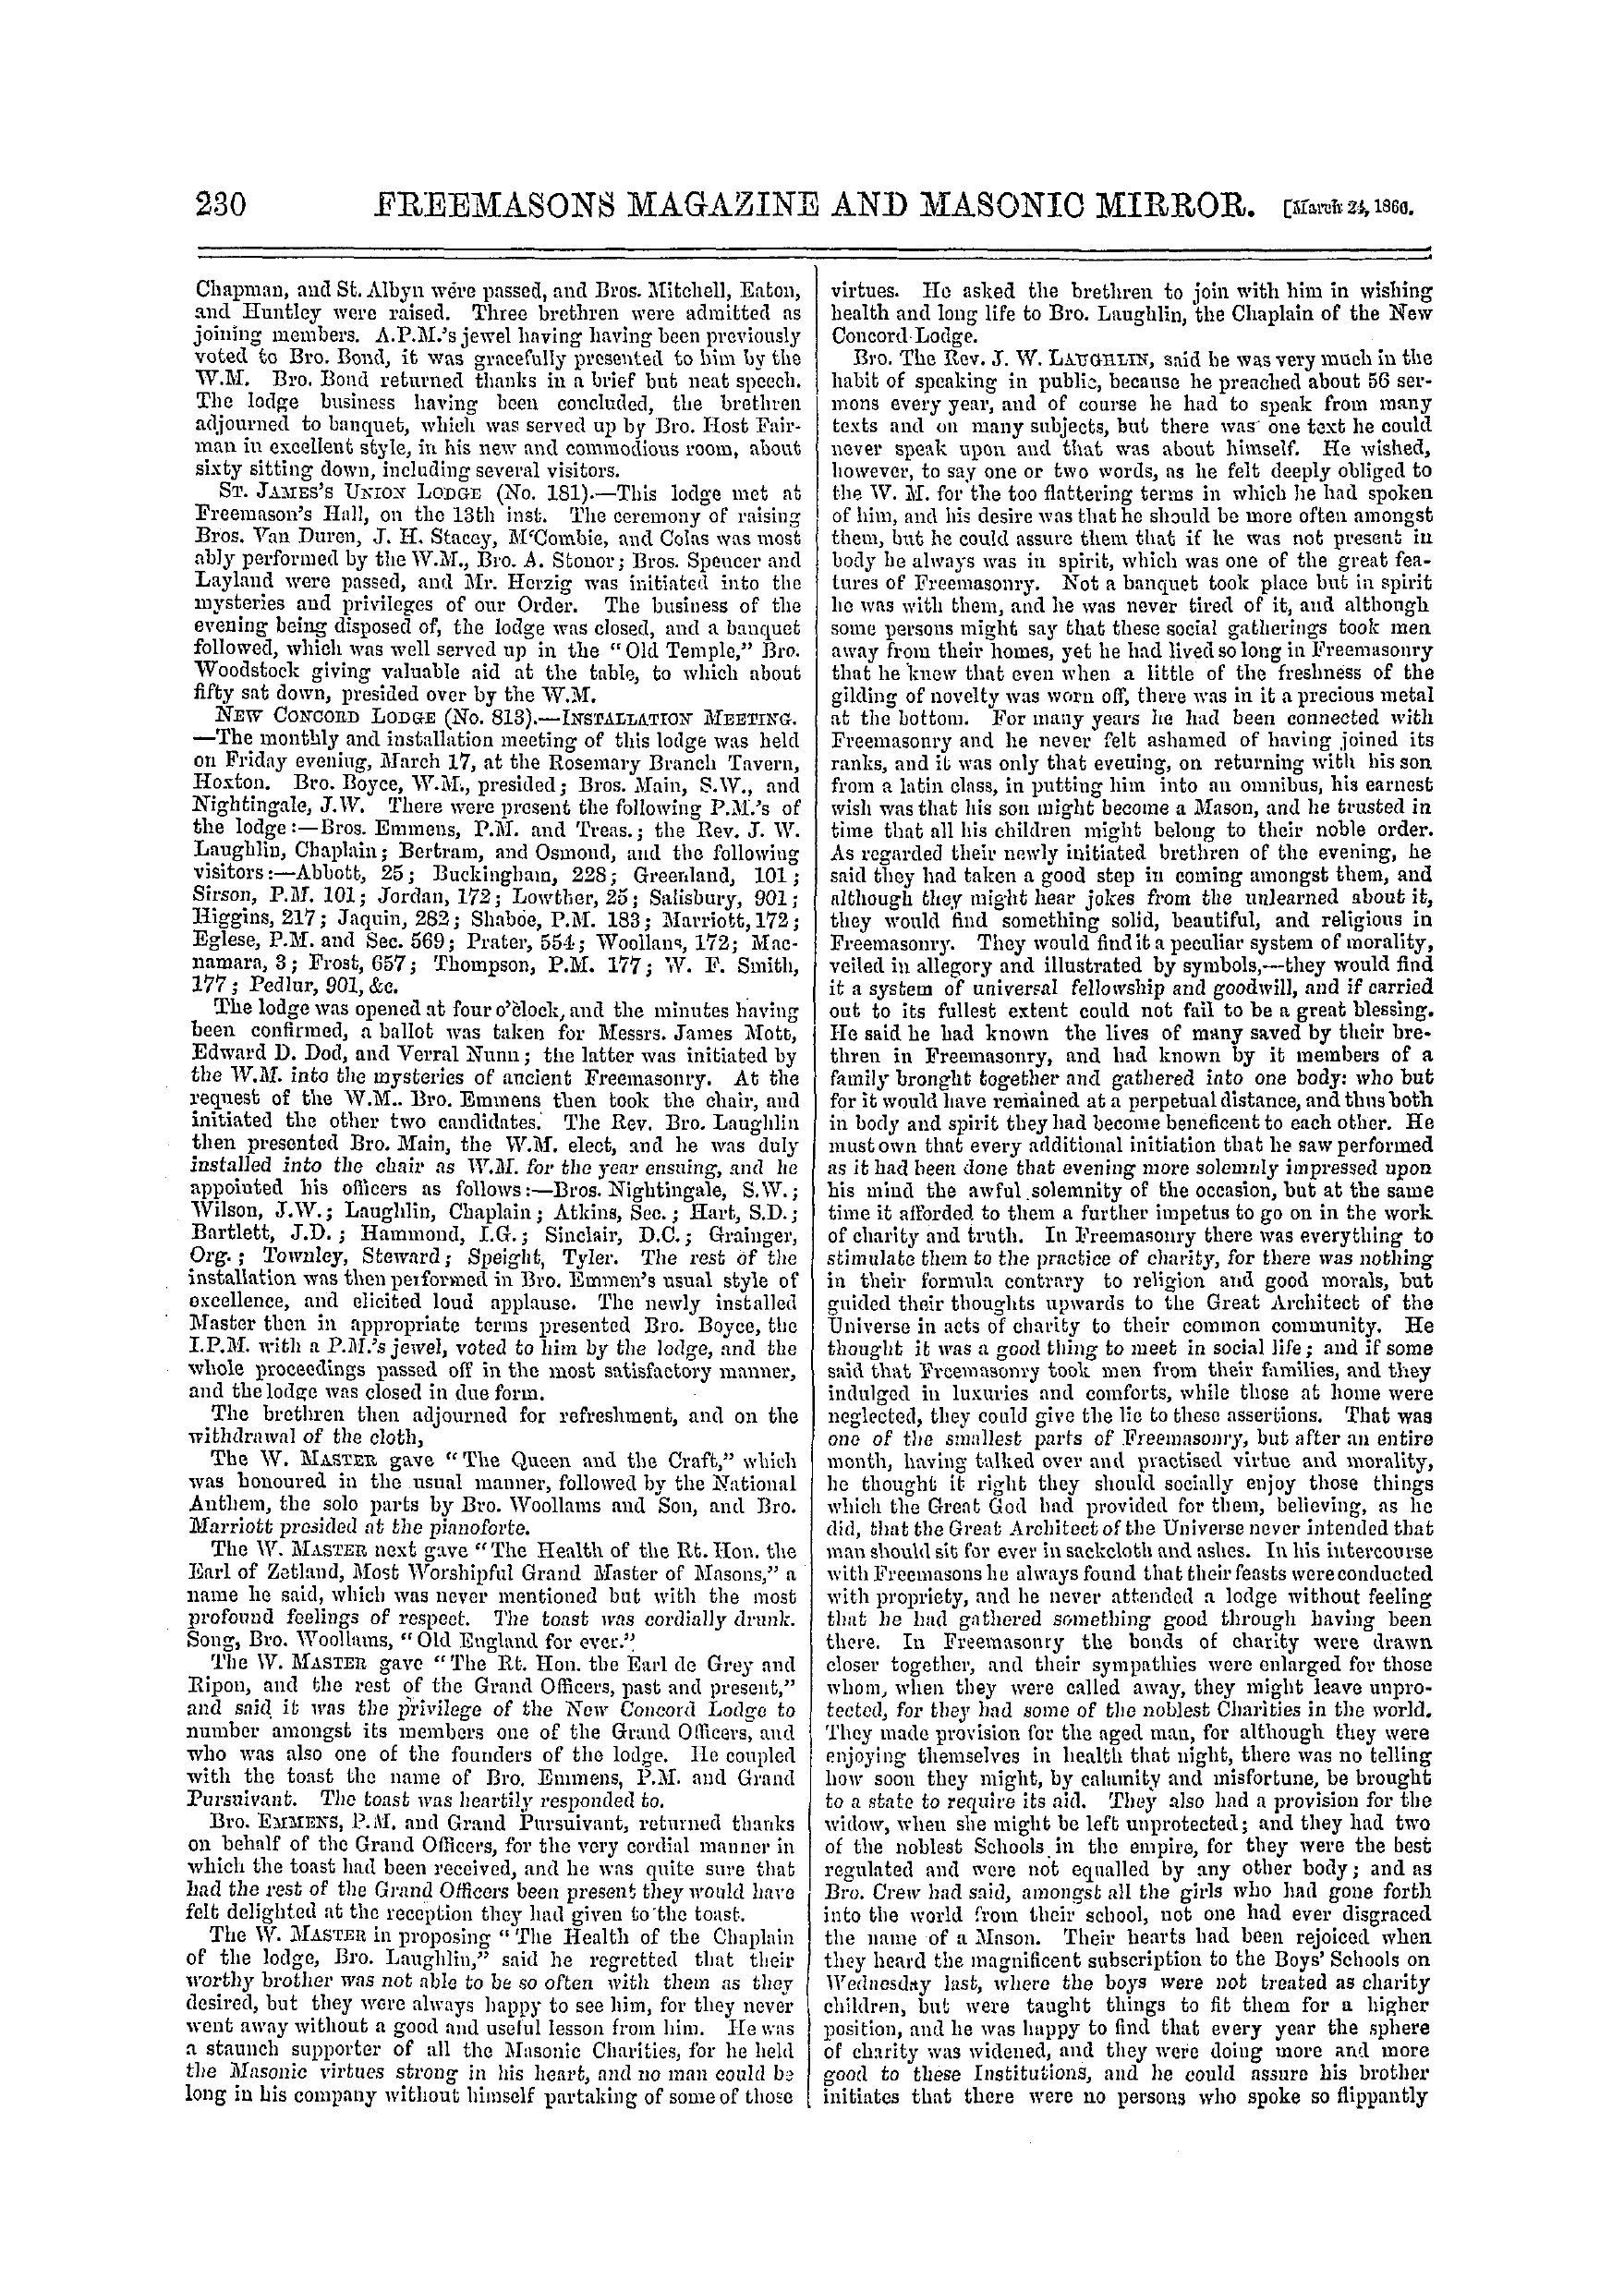 The Freemasons' Monthly Magazine: 1866-03-24: 10